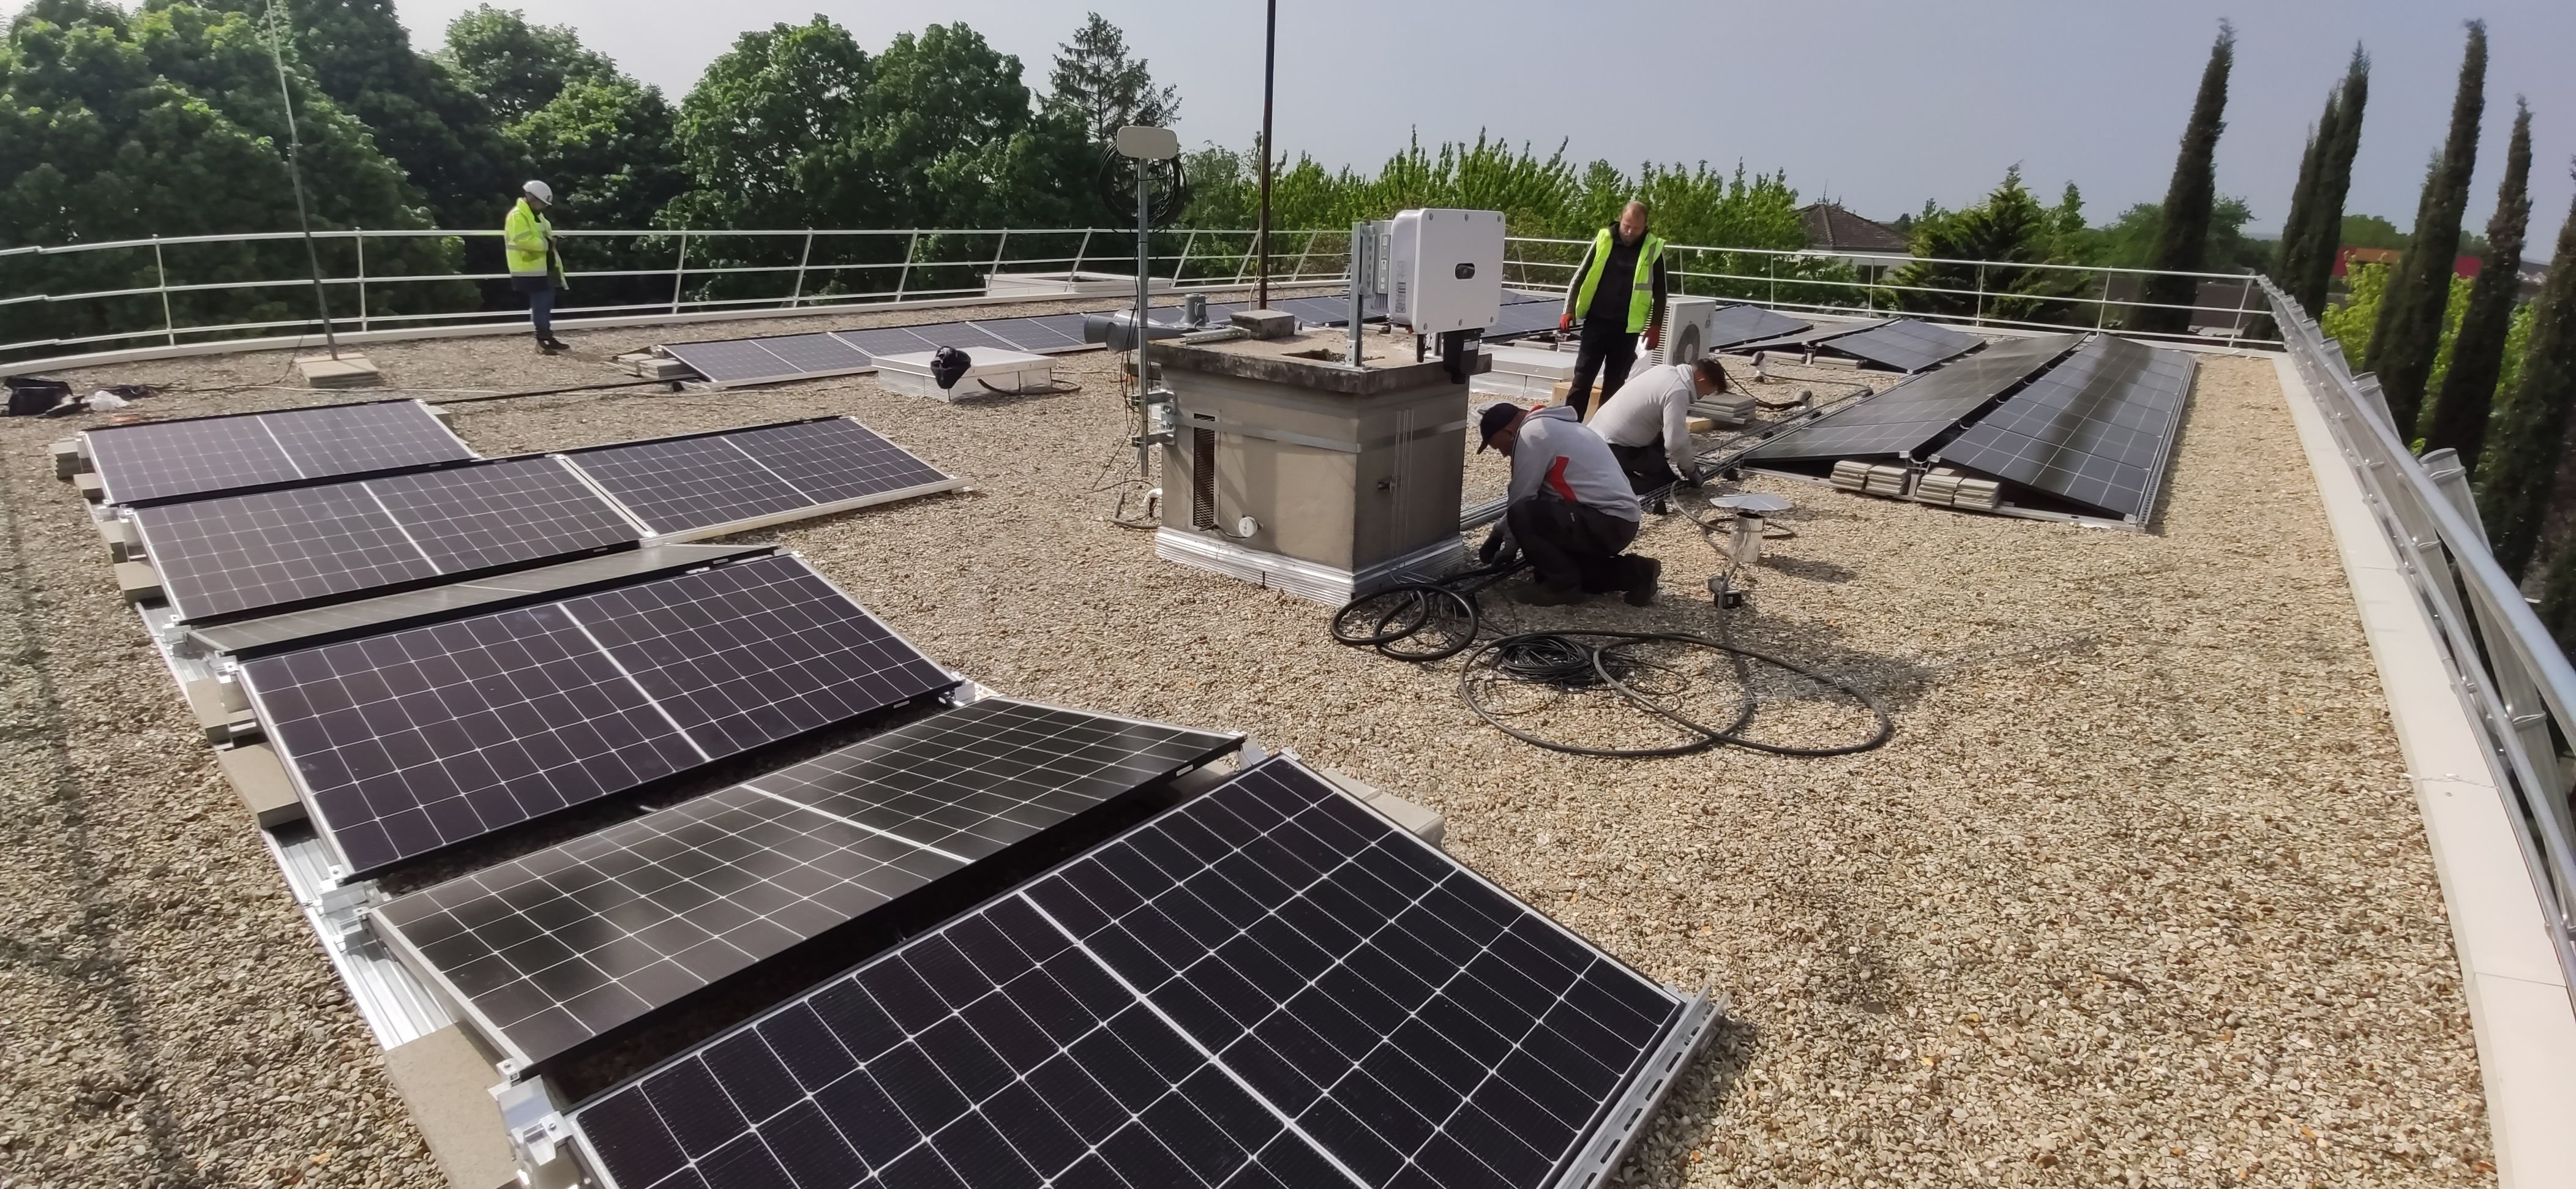 Des panneaux photovoltaïques comme ceux-ci devraient bientôt éclore sur de nombreux toits de l'agglomération de Cergy-Pontoise (Illustration). LP/N.C.